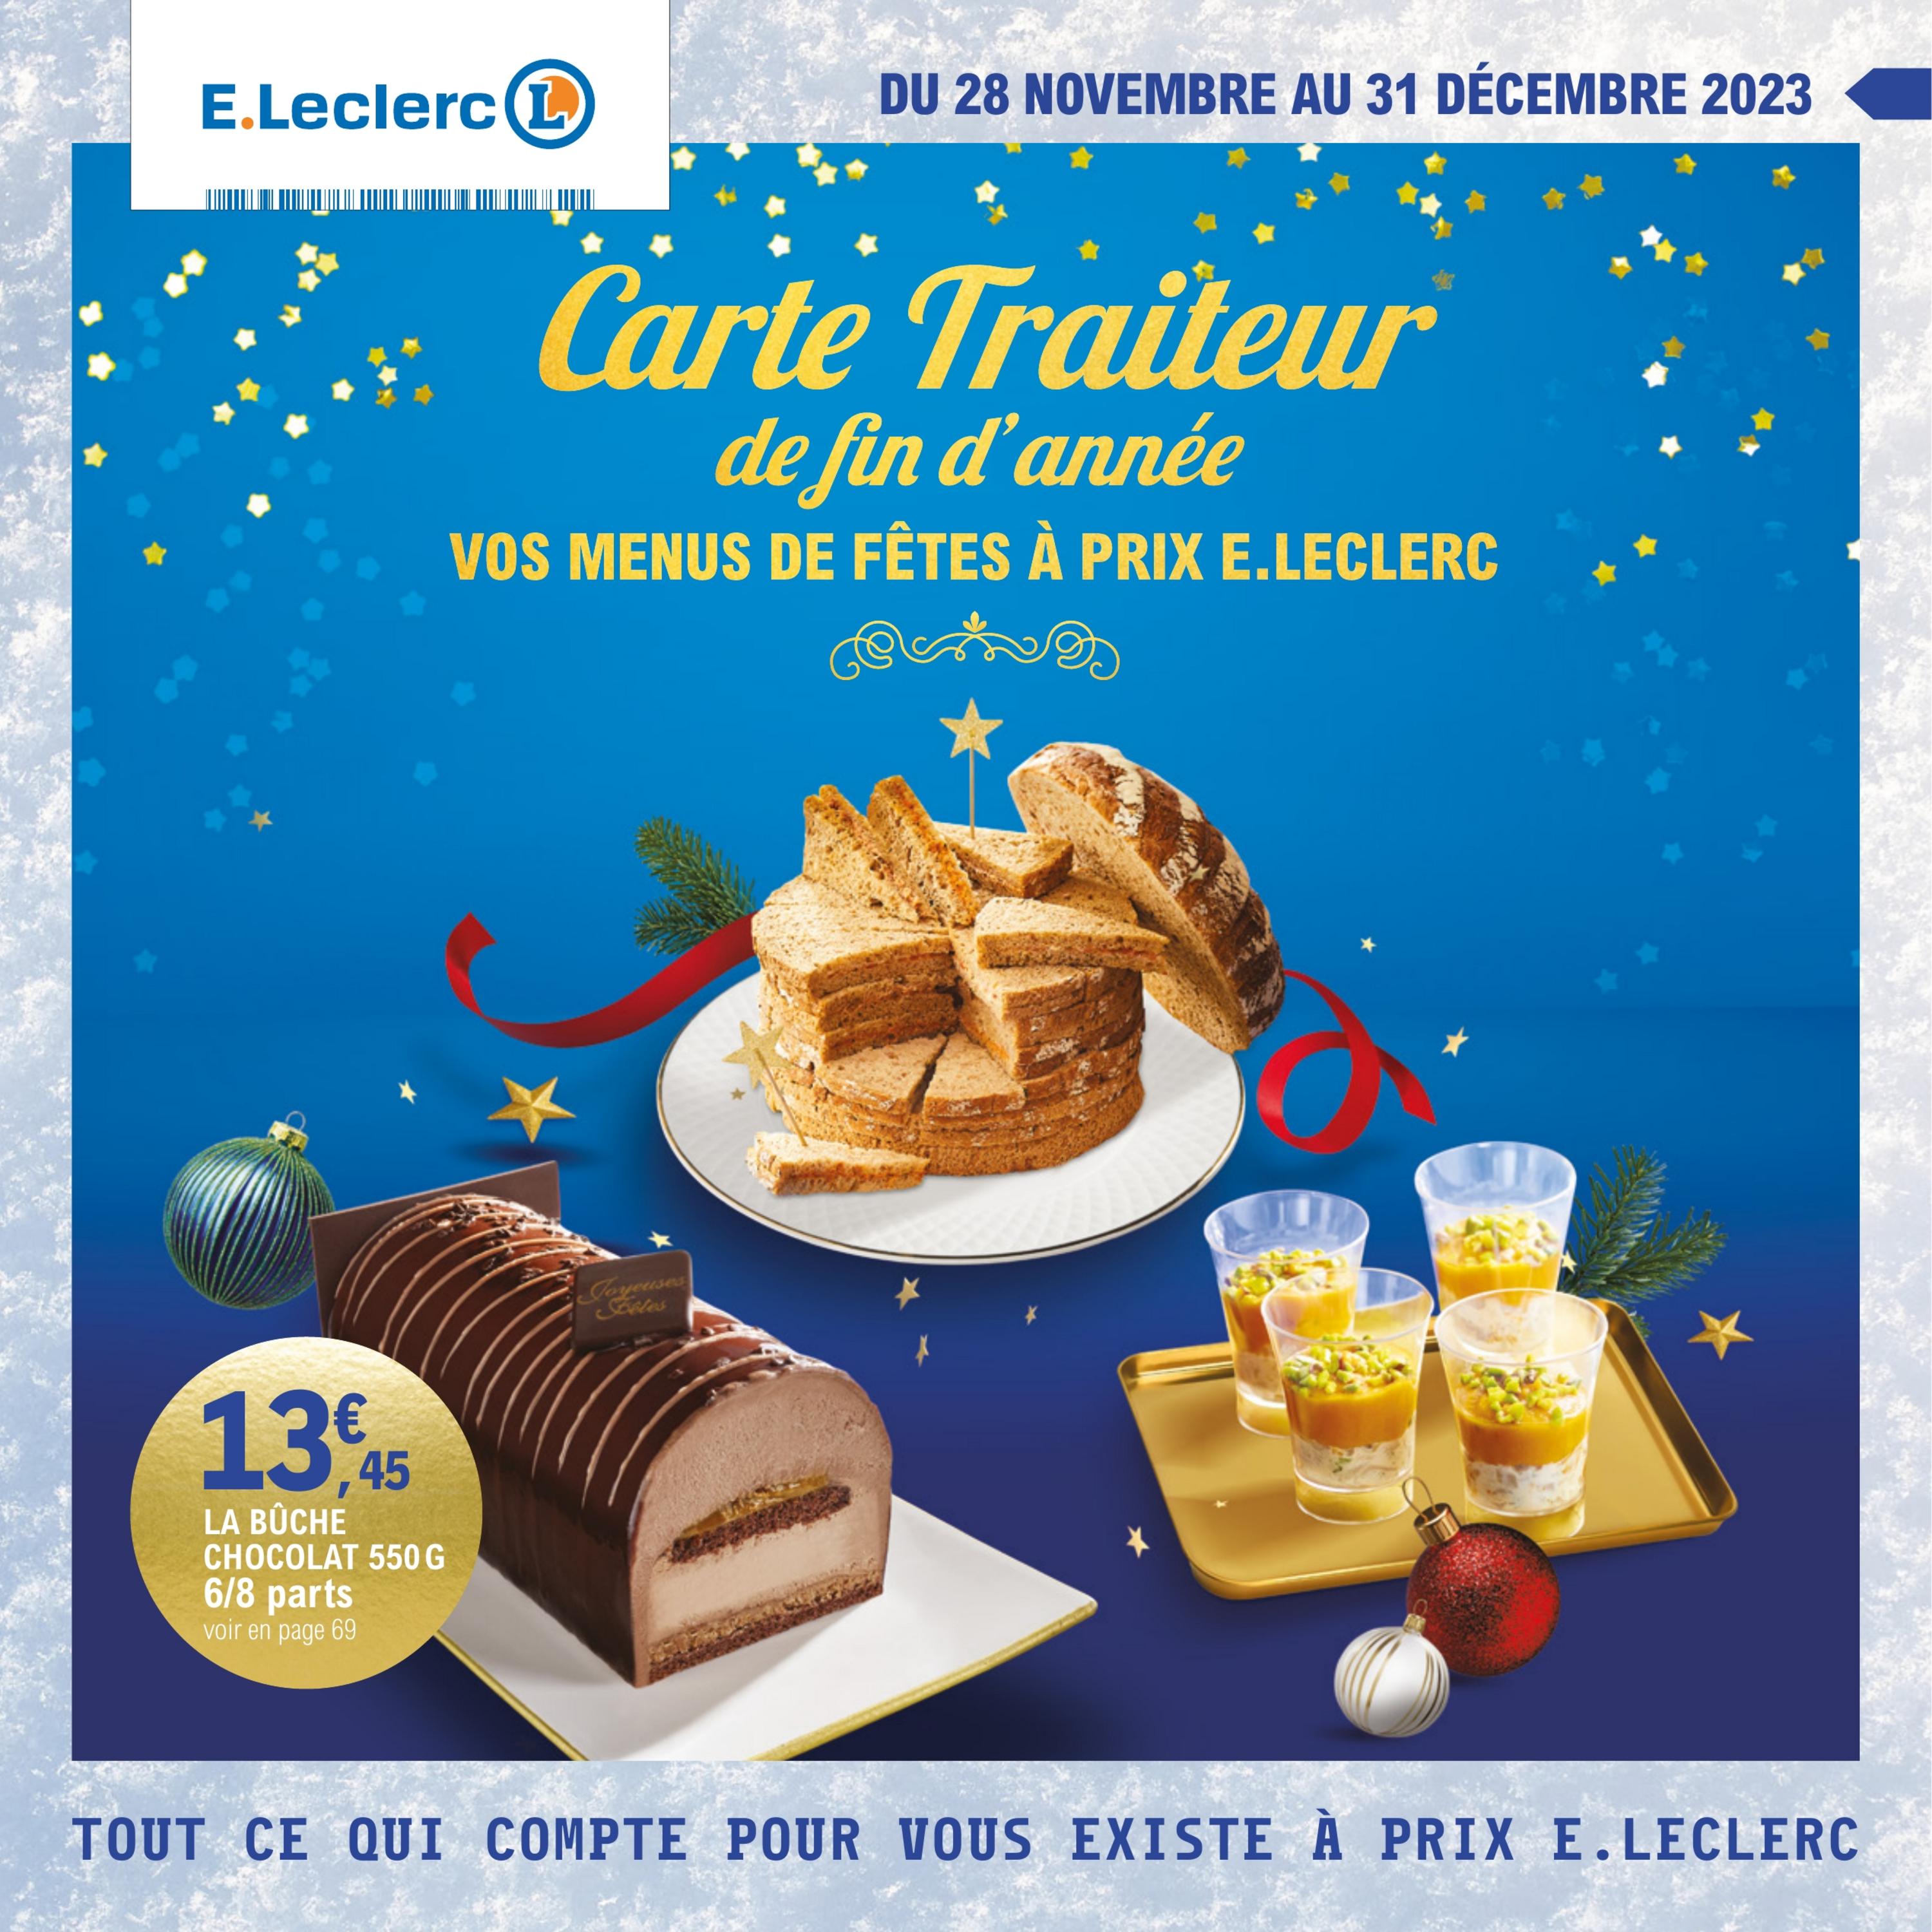 image du catalogue carte traiteur festive - Du 21 novembre au 31 décembre 2023